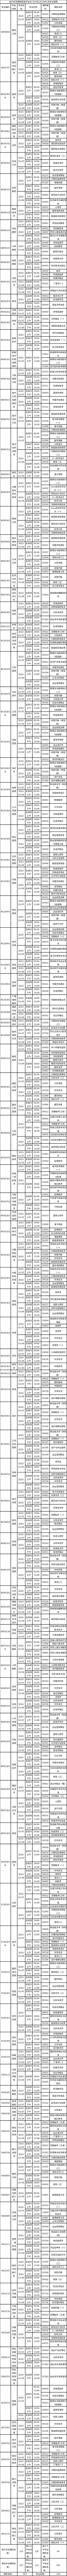 2023年1月四川 自考(233次）考试课表